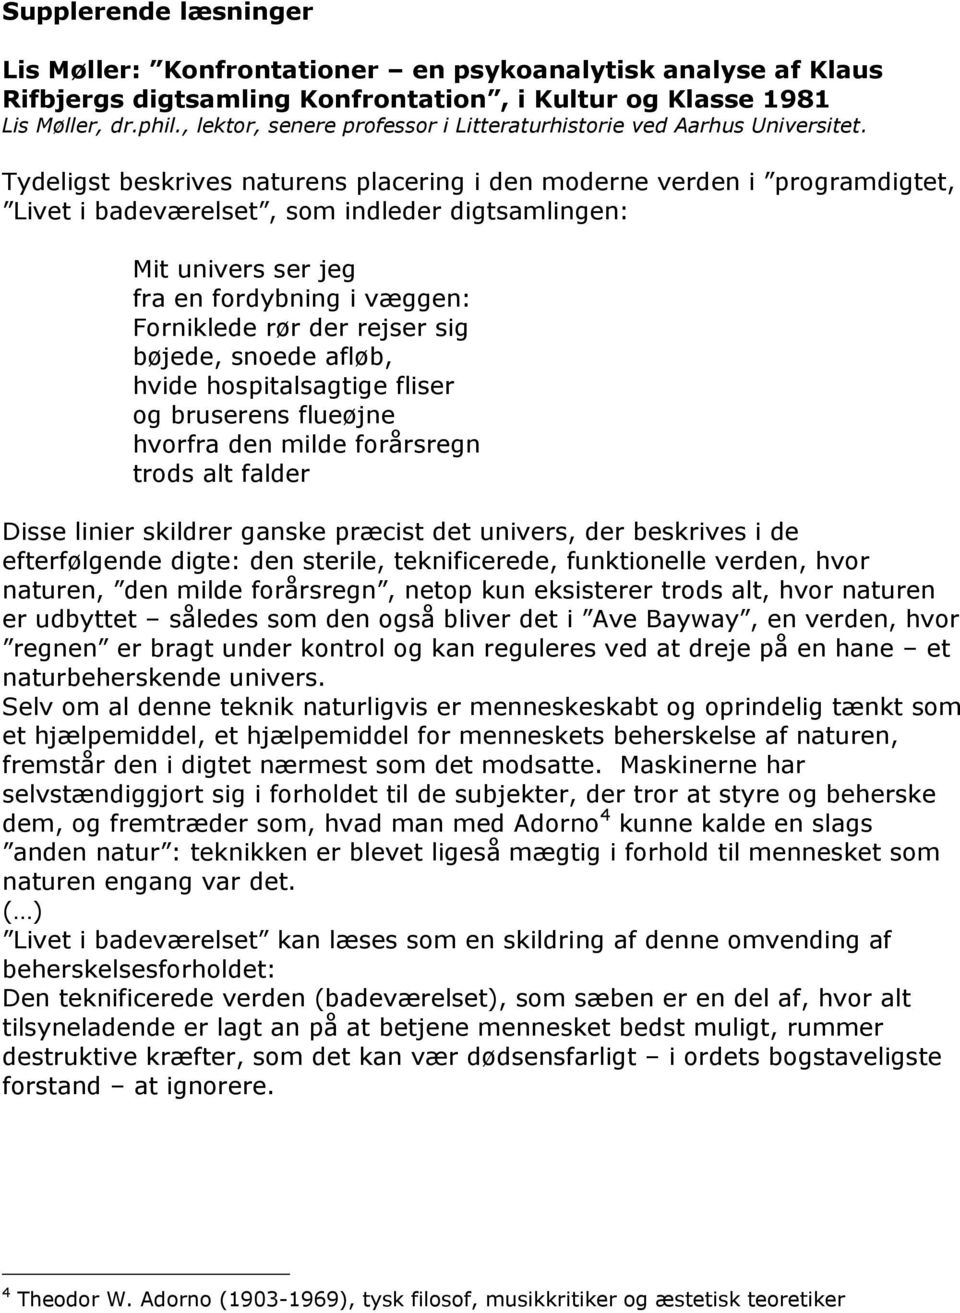 Klaus Rifbjerg: Livet i badeværelset (1960) - PDF Gratis download